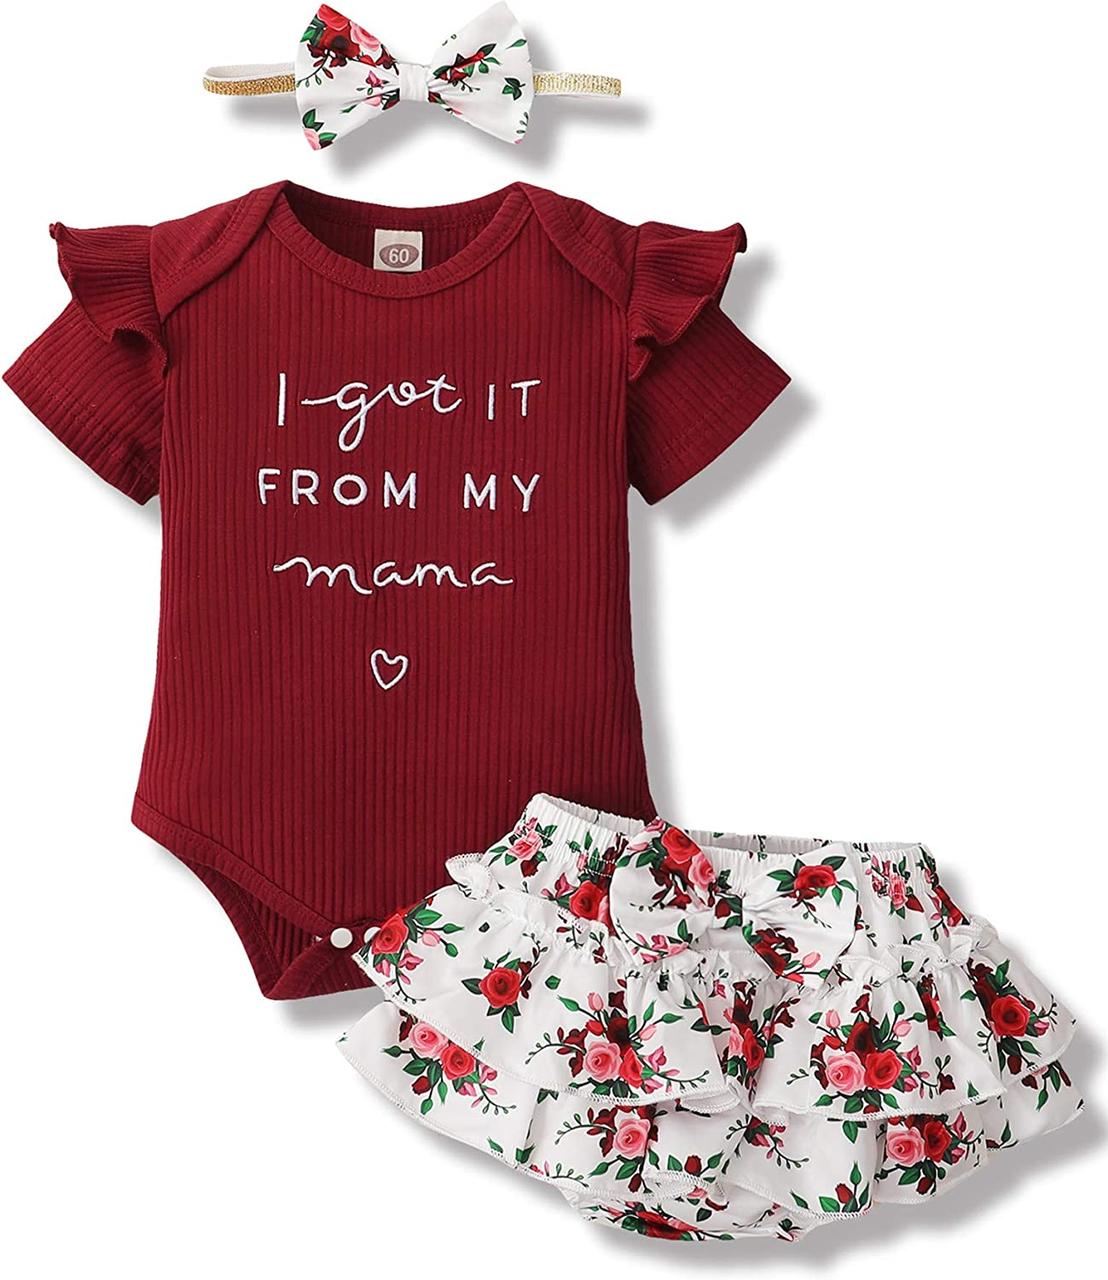 Одяг для новонароджених дівчаток, комплект з квітковими мотивами, Winered 3-6 Months